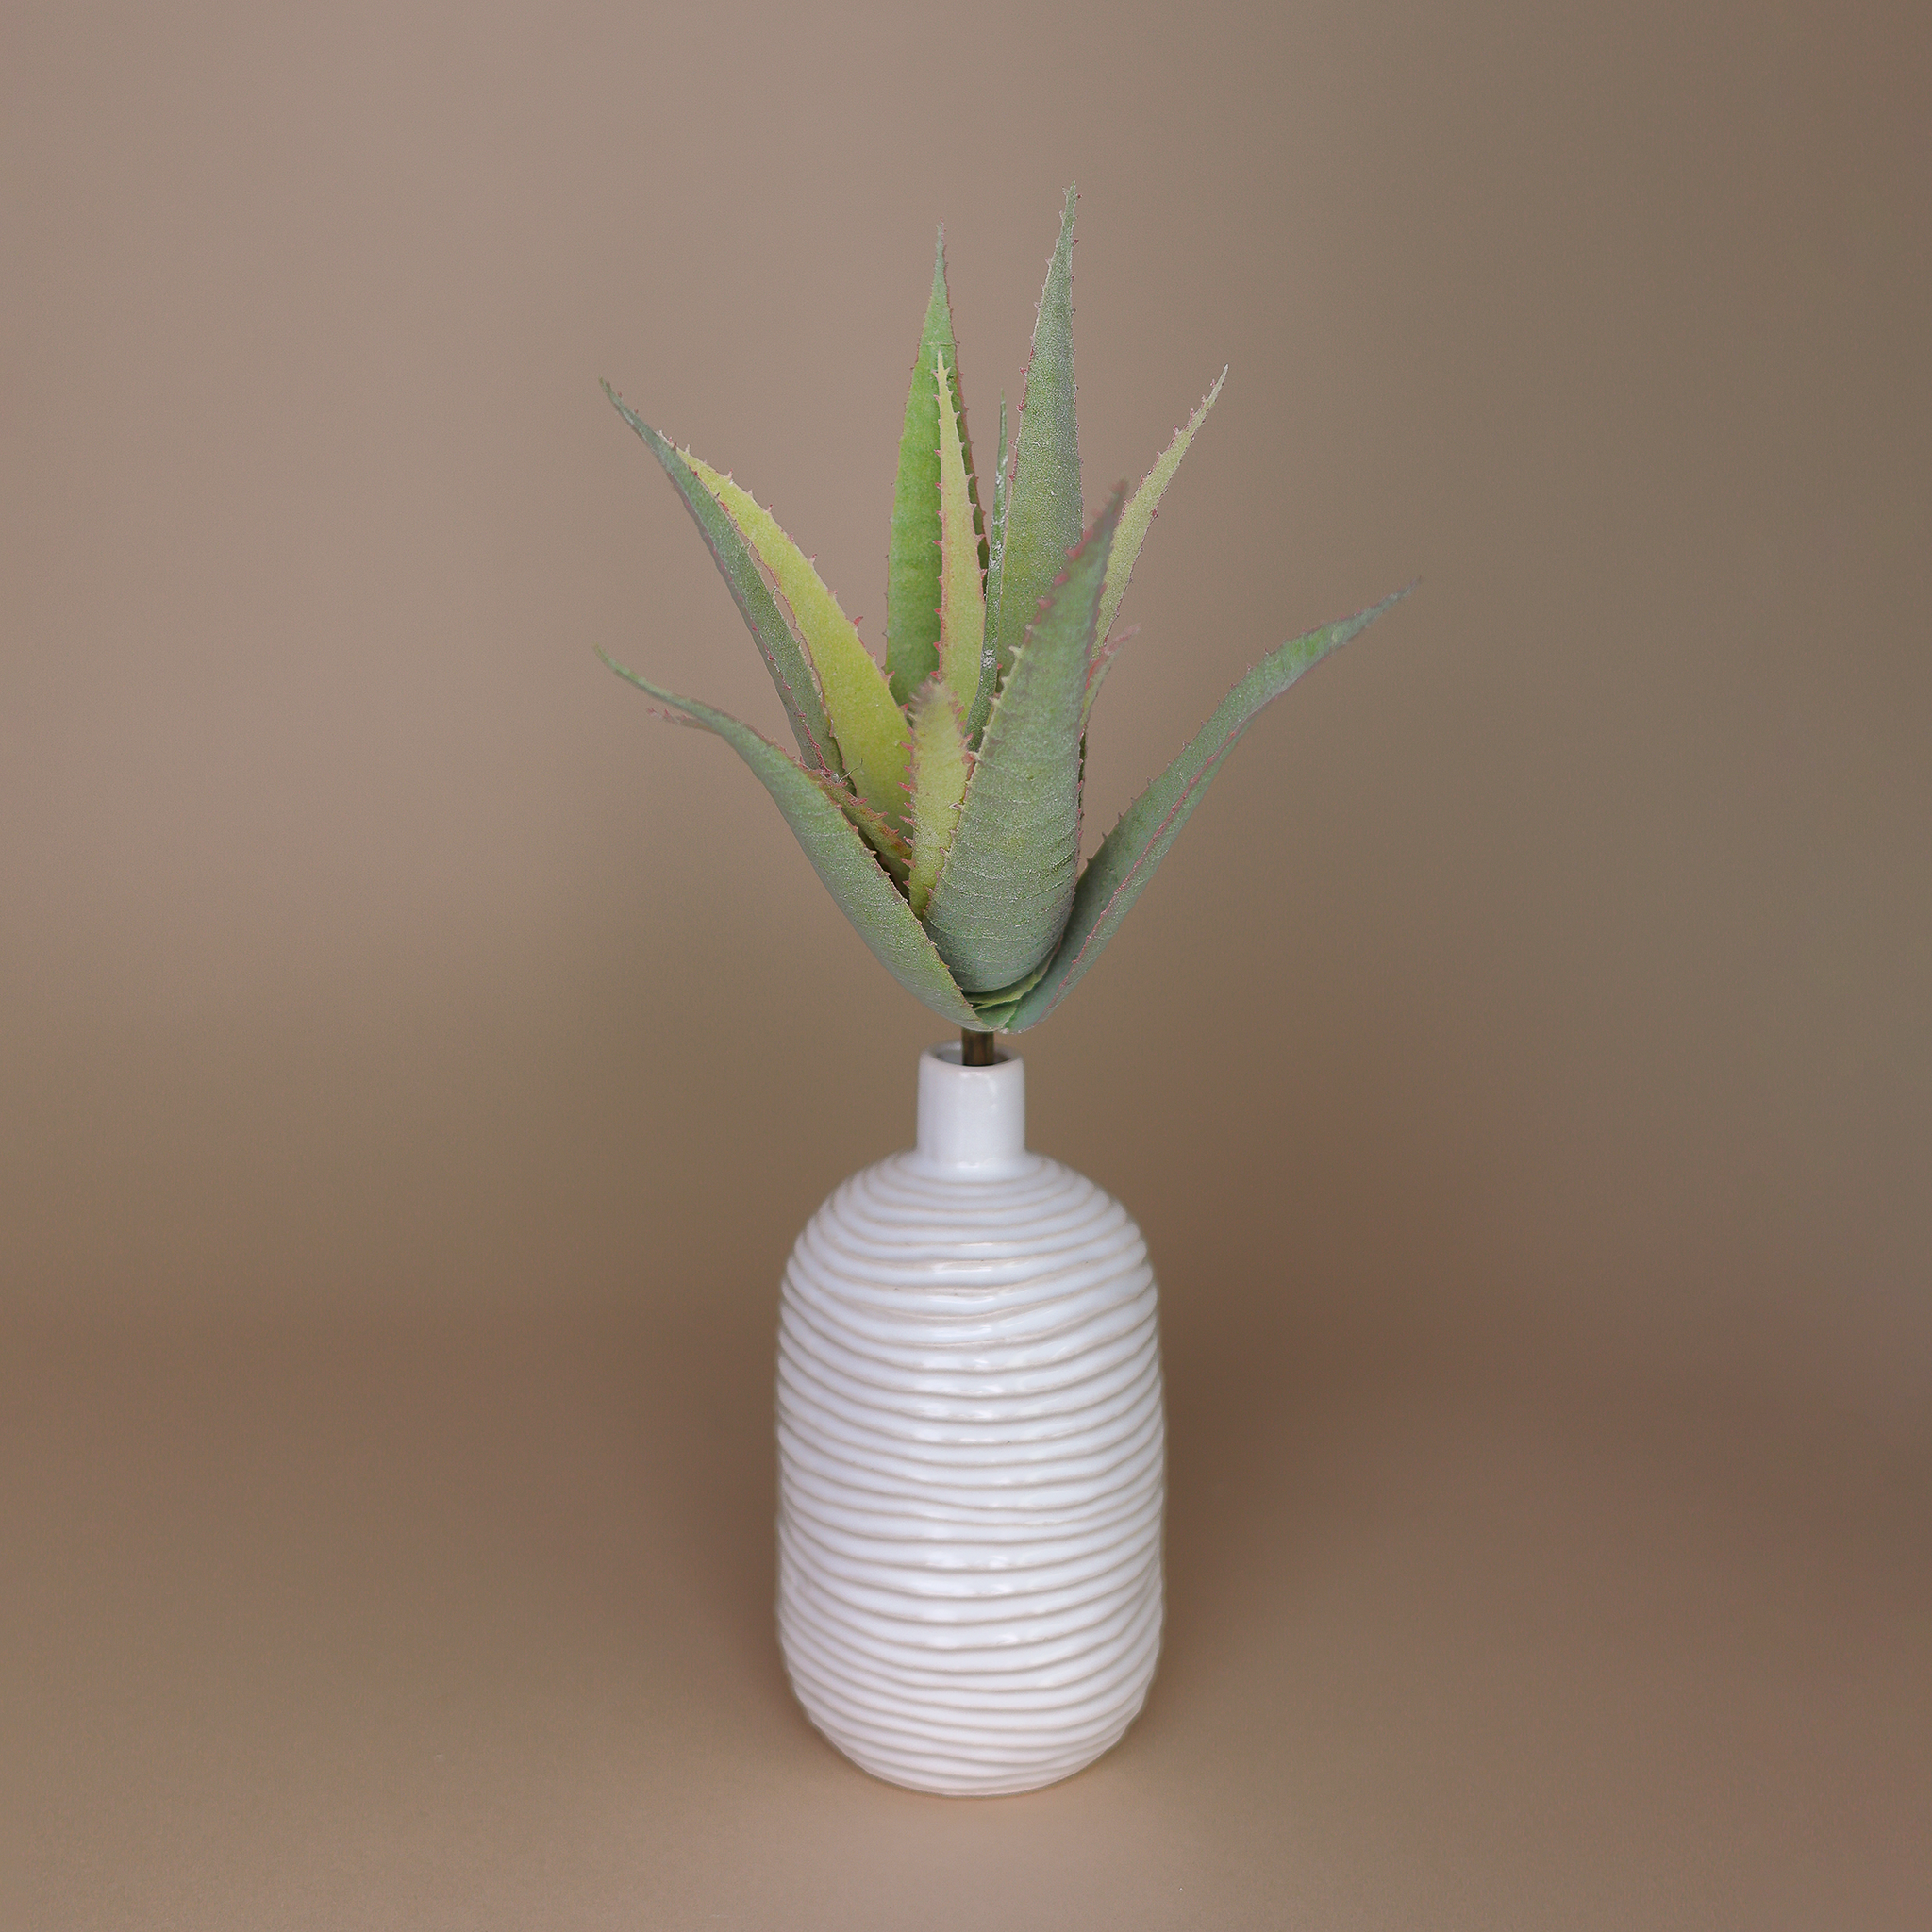 Vase Modell "Max" in verschiedenen Größen mit unterschiedlichen Trockenmaterialien.